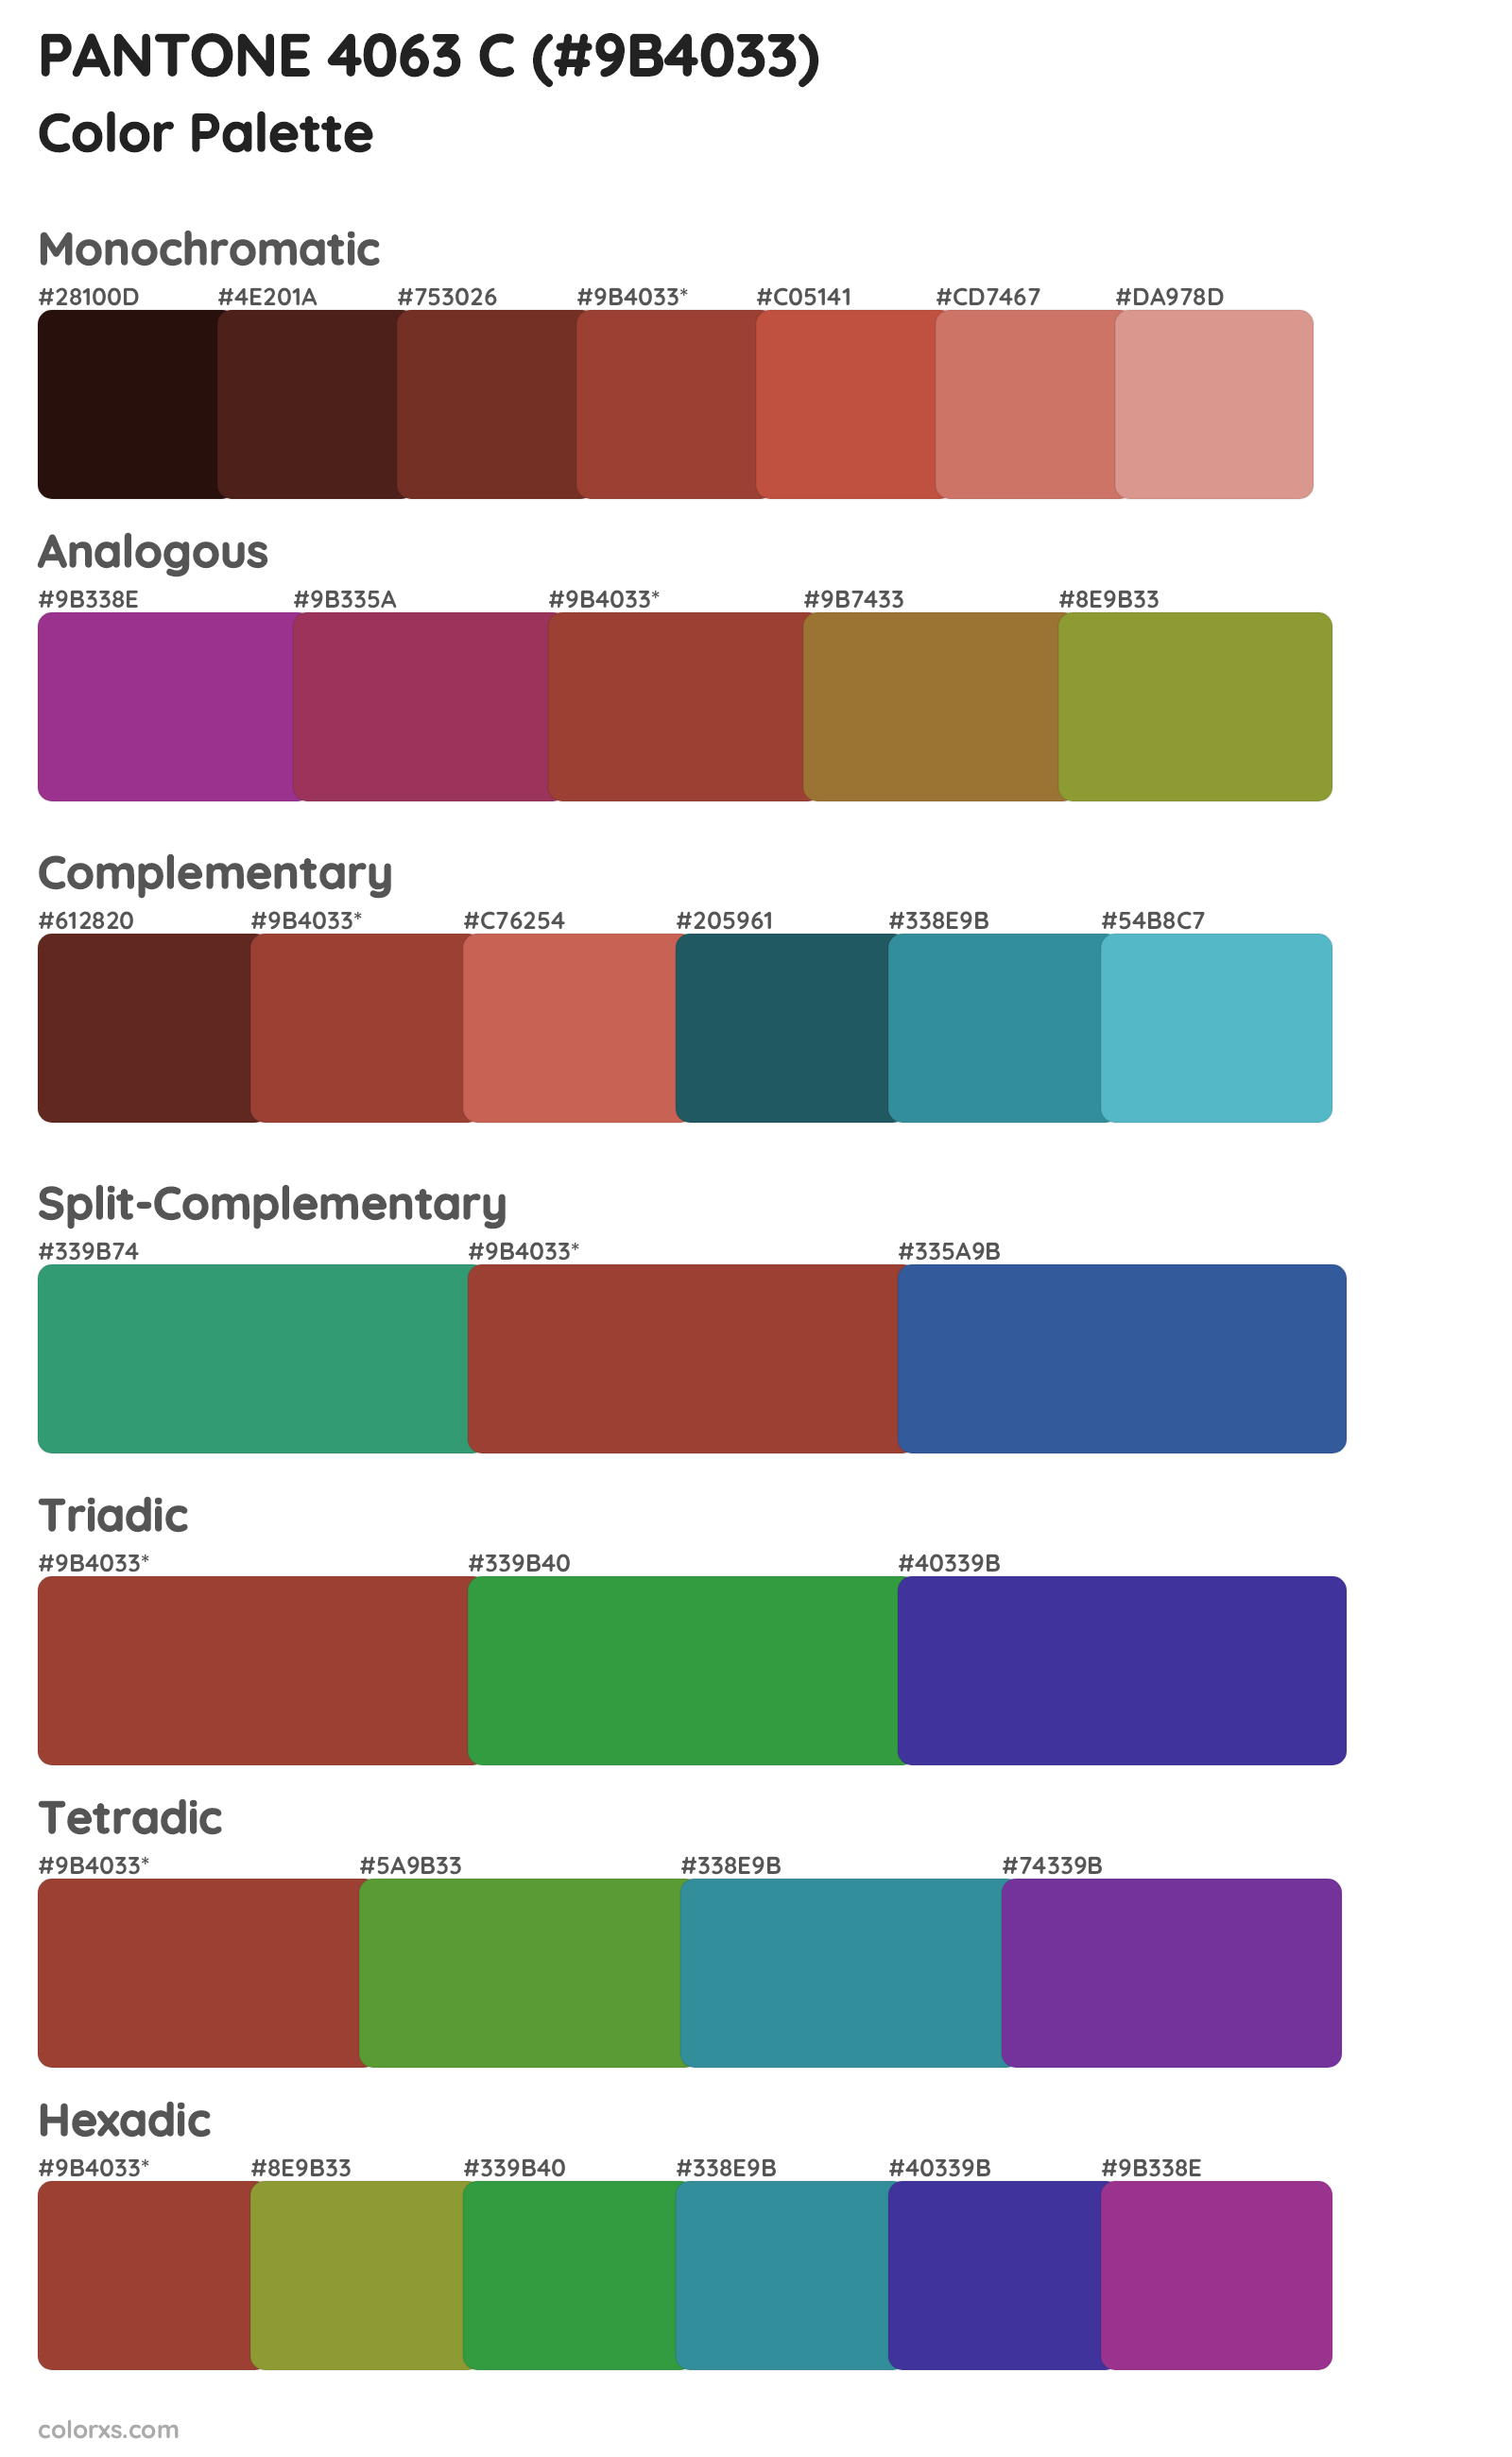 PANTONE 4063 C Color Scheme Palettes